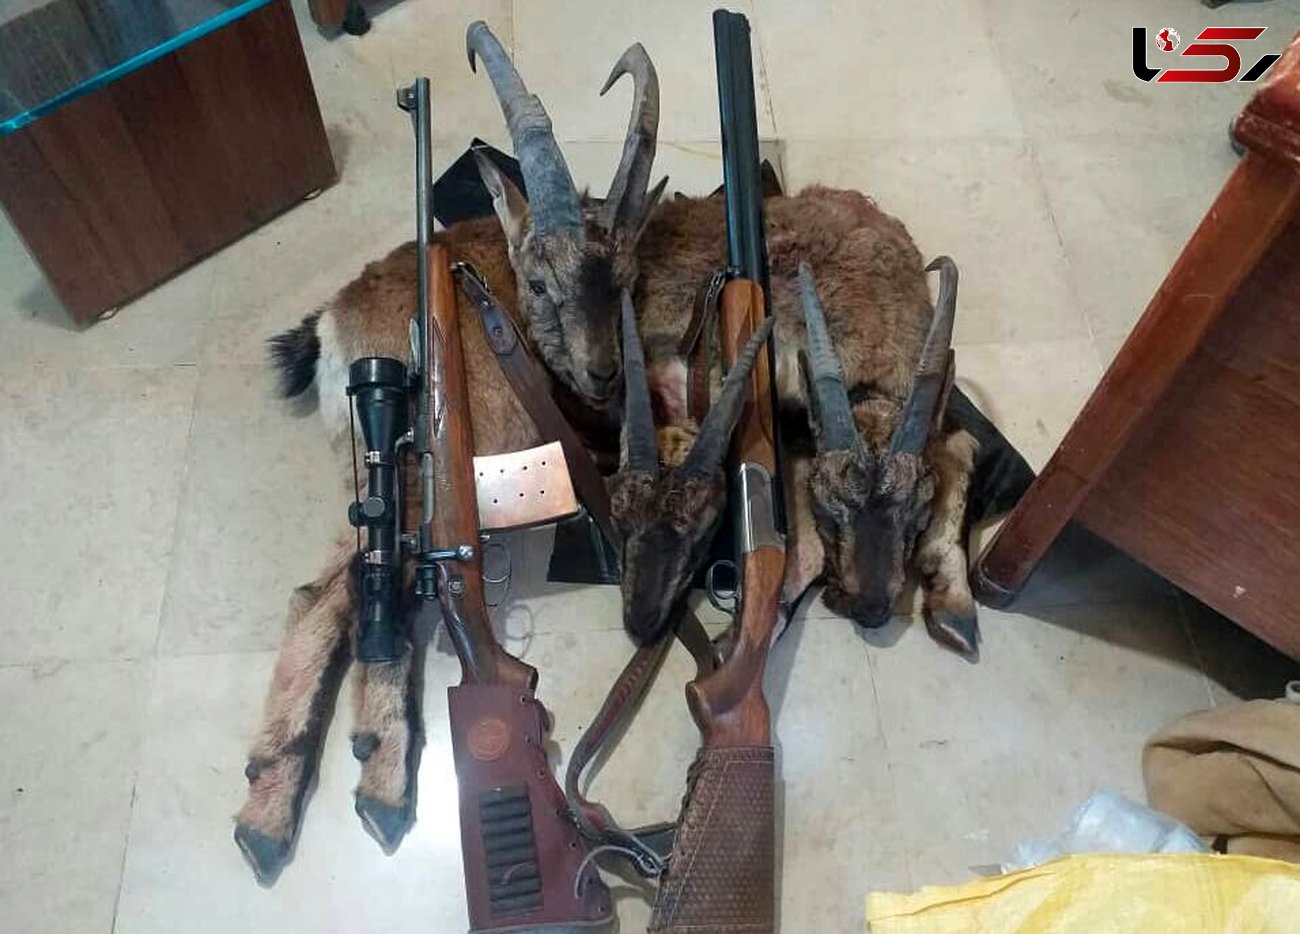 دستگیری ۳ شکارچی متخلف در منطقه حفاظت شده سهند